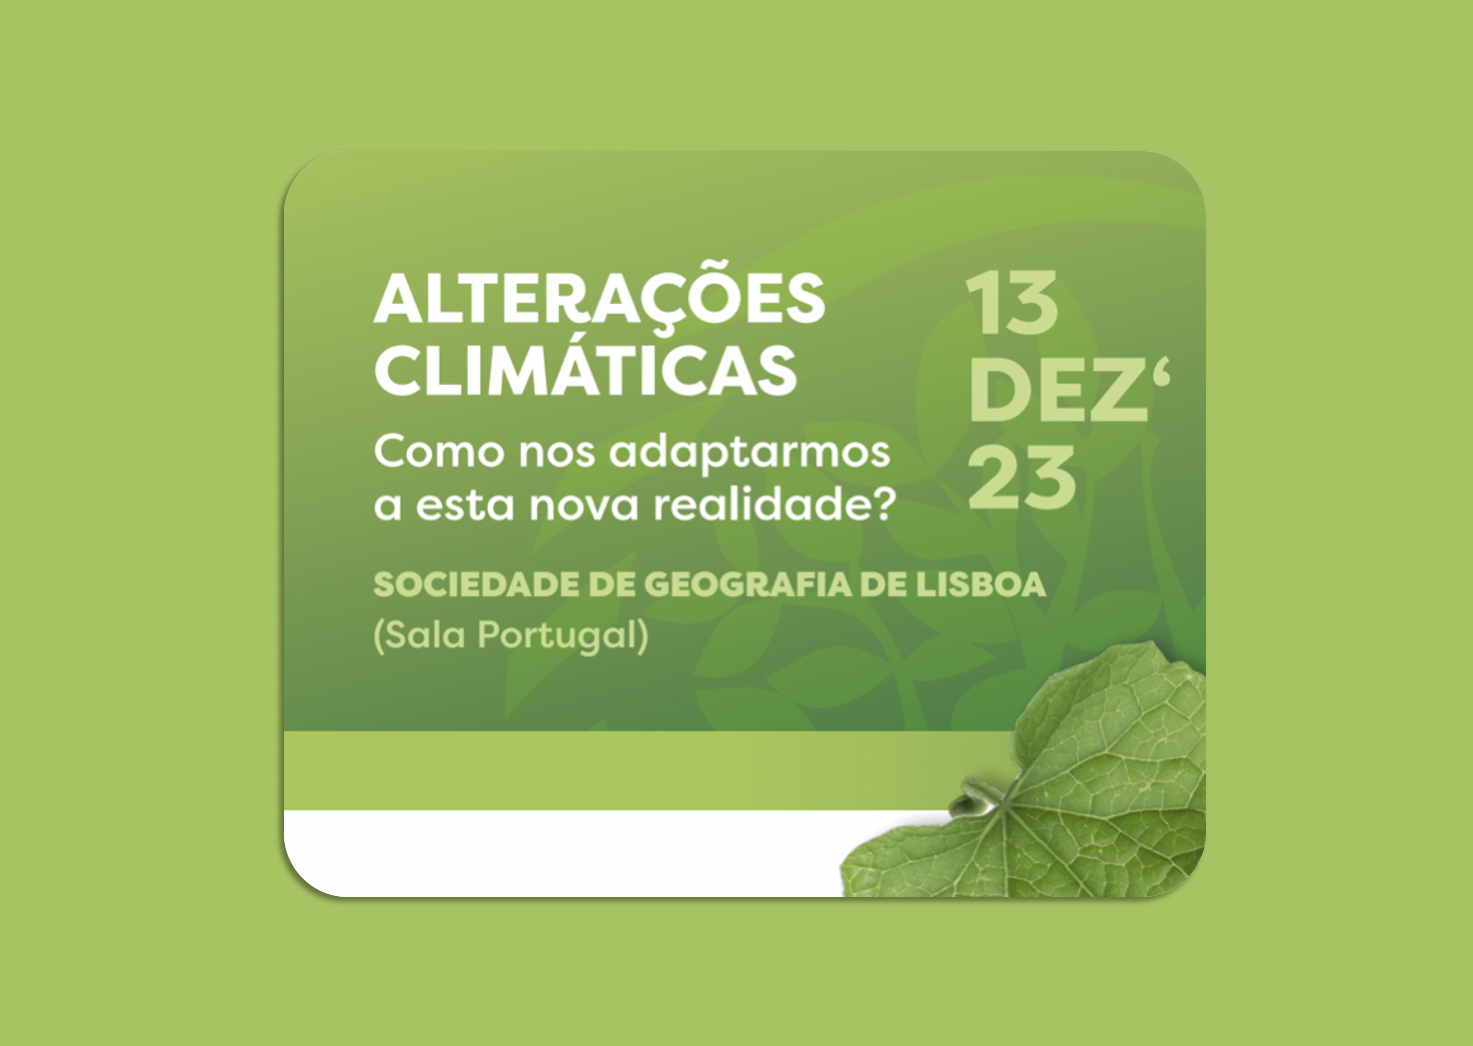 Conferência: “Alterações Climáticas: Como nos adaptarmos a esta nova realidade?” (13 de dezembro)